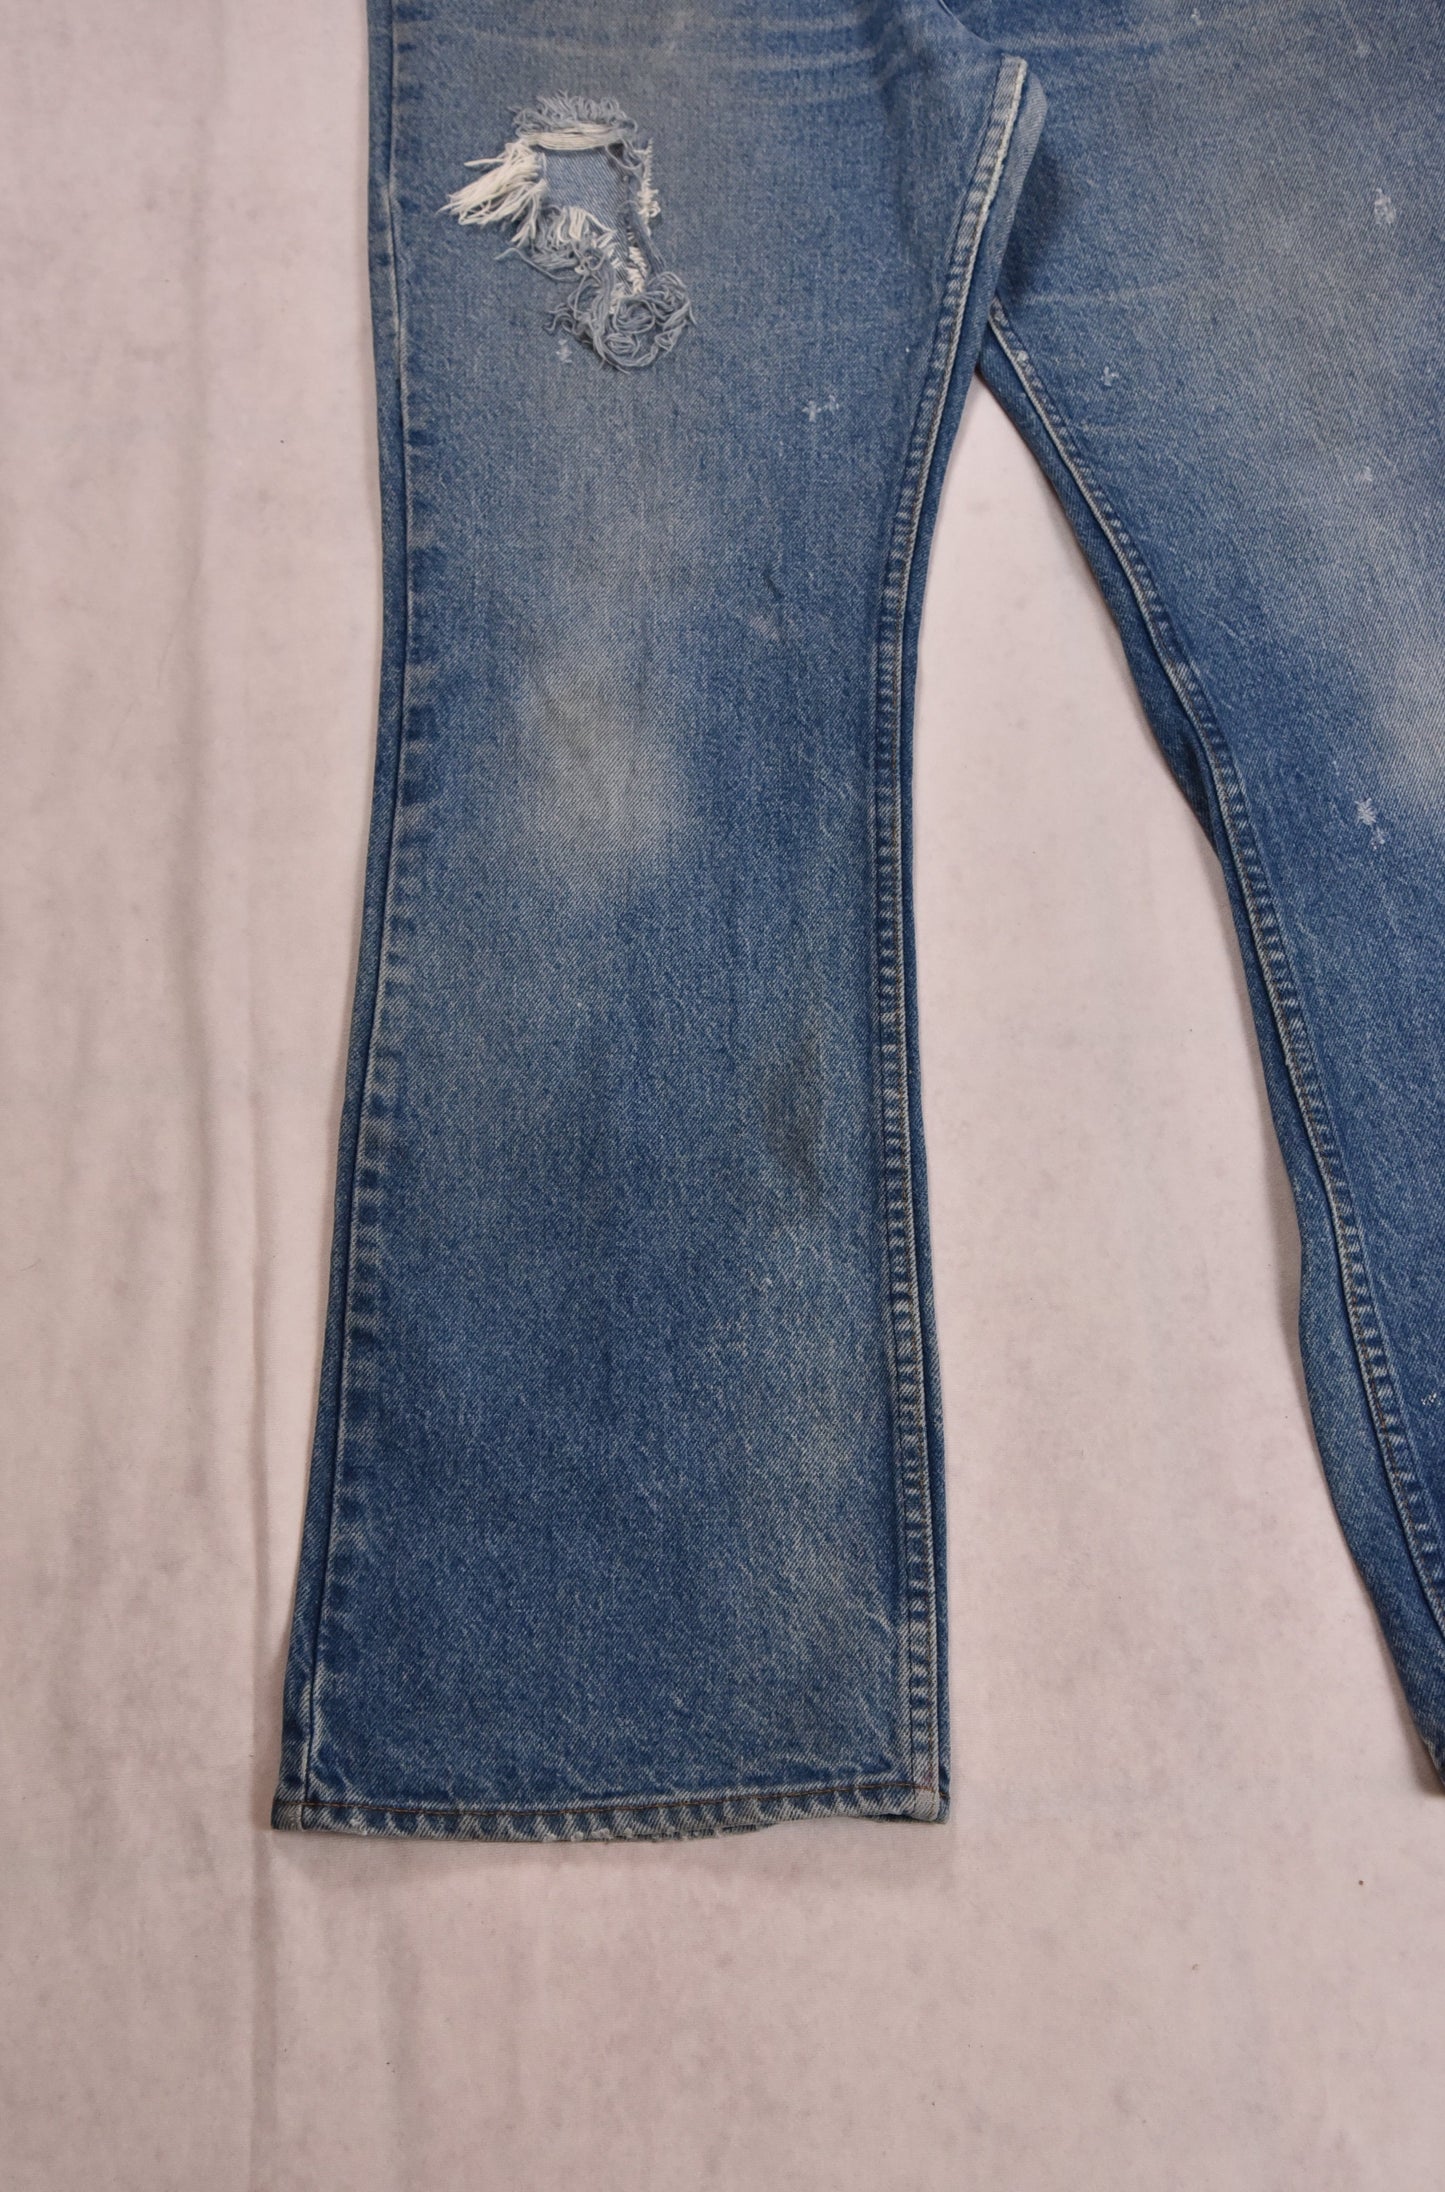 Levi's 517 Orange Tab Jeans Vintage / 36x33